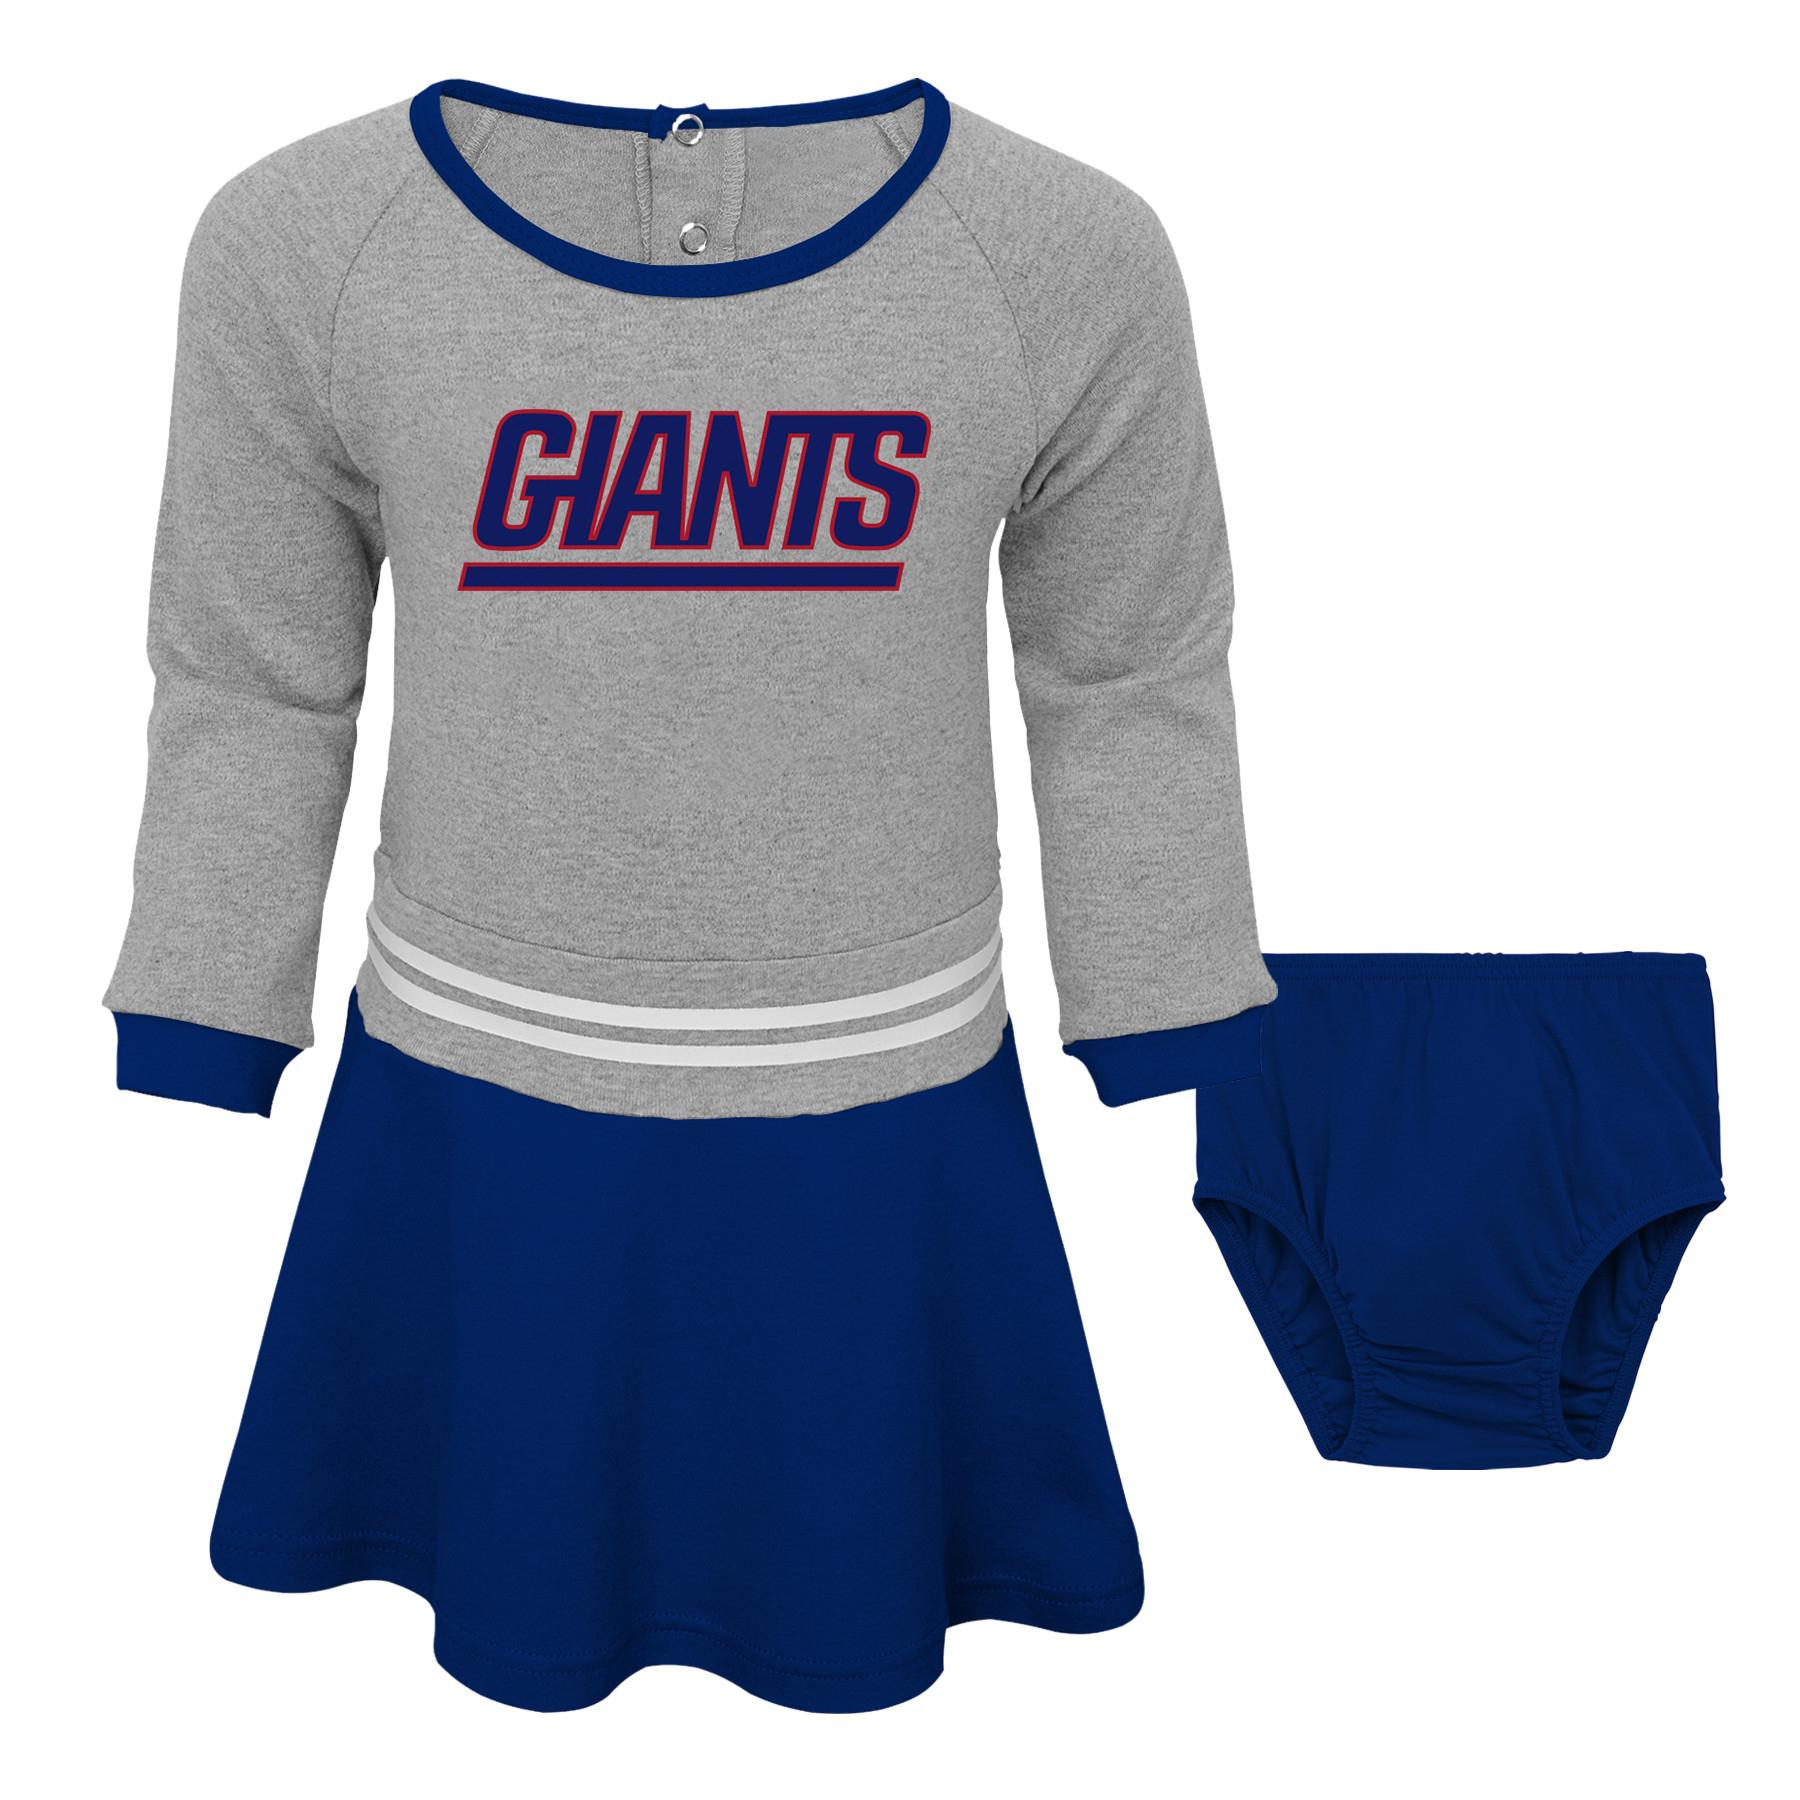 NFL Toddler Girls' Dress & Diaper Cover - New York Giants